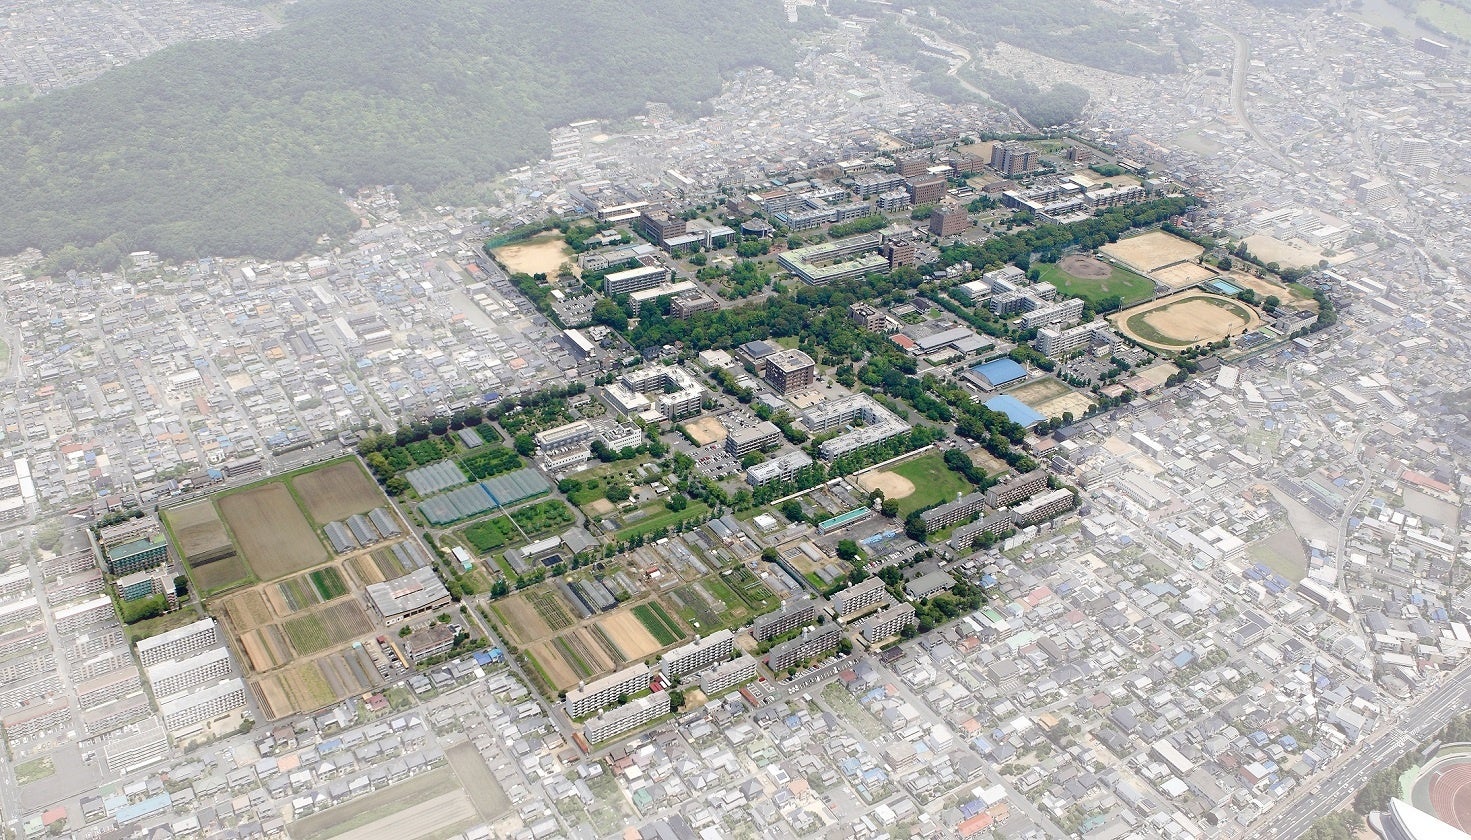 【岡山大学】平成30年7月豪雨災害から5年、復興を支えた岡山大学の総合知と災害レジリエンスをテーマにしたシンポジウムを開催